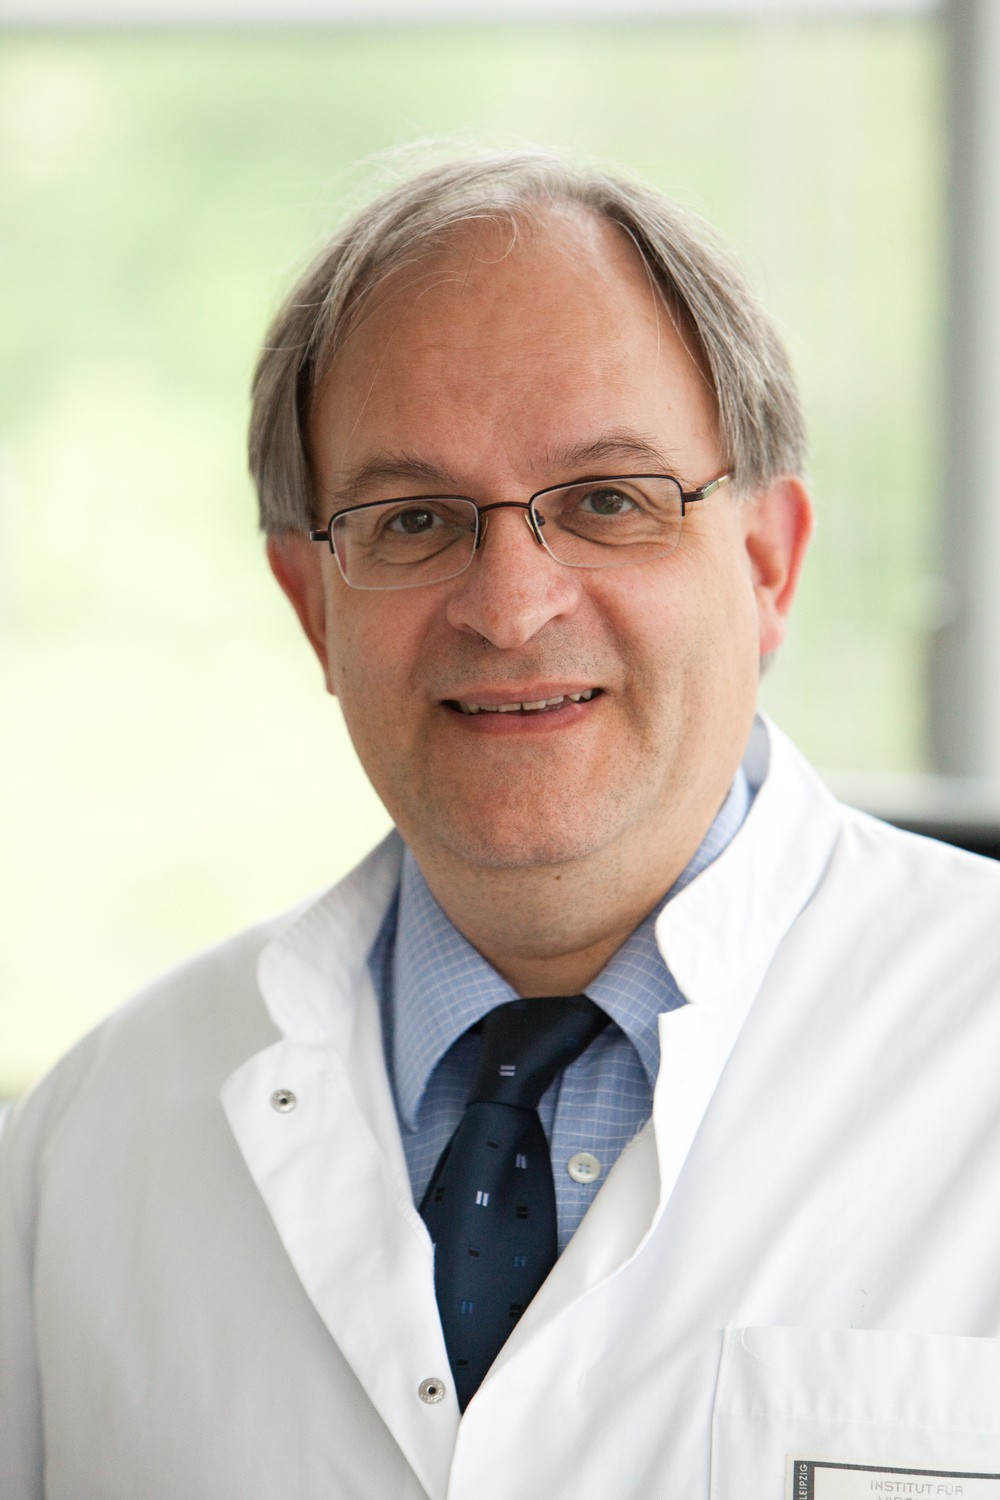 Angesehener Experte und gefragter Gesprächspartner, vor allem in Zeiten der Corona-Pandemie: Prof. Uwe Gerd Liebert leitete das Institut für Virologie am UKL seit einem Vierteljahrhundert. Nun geht er in den Ruhestand.